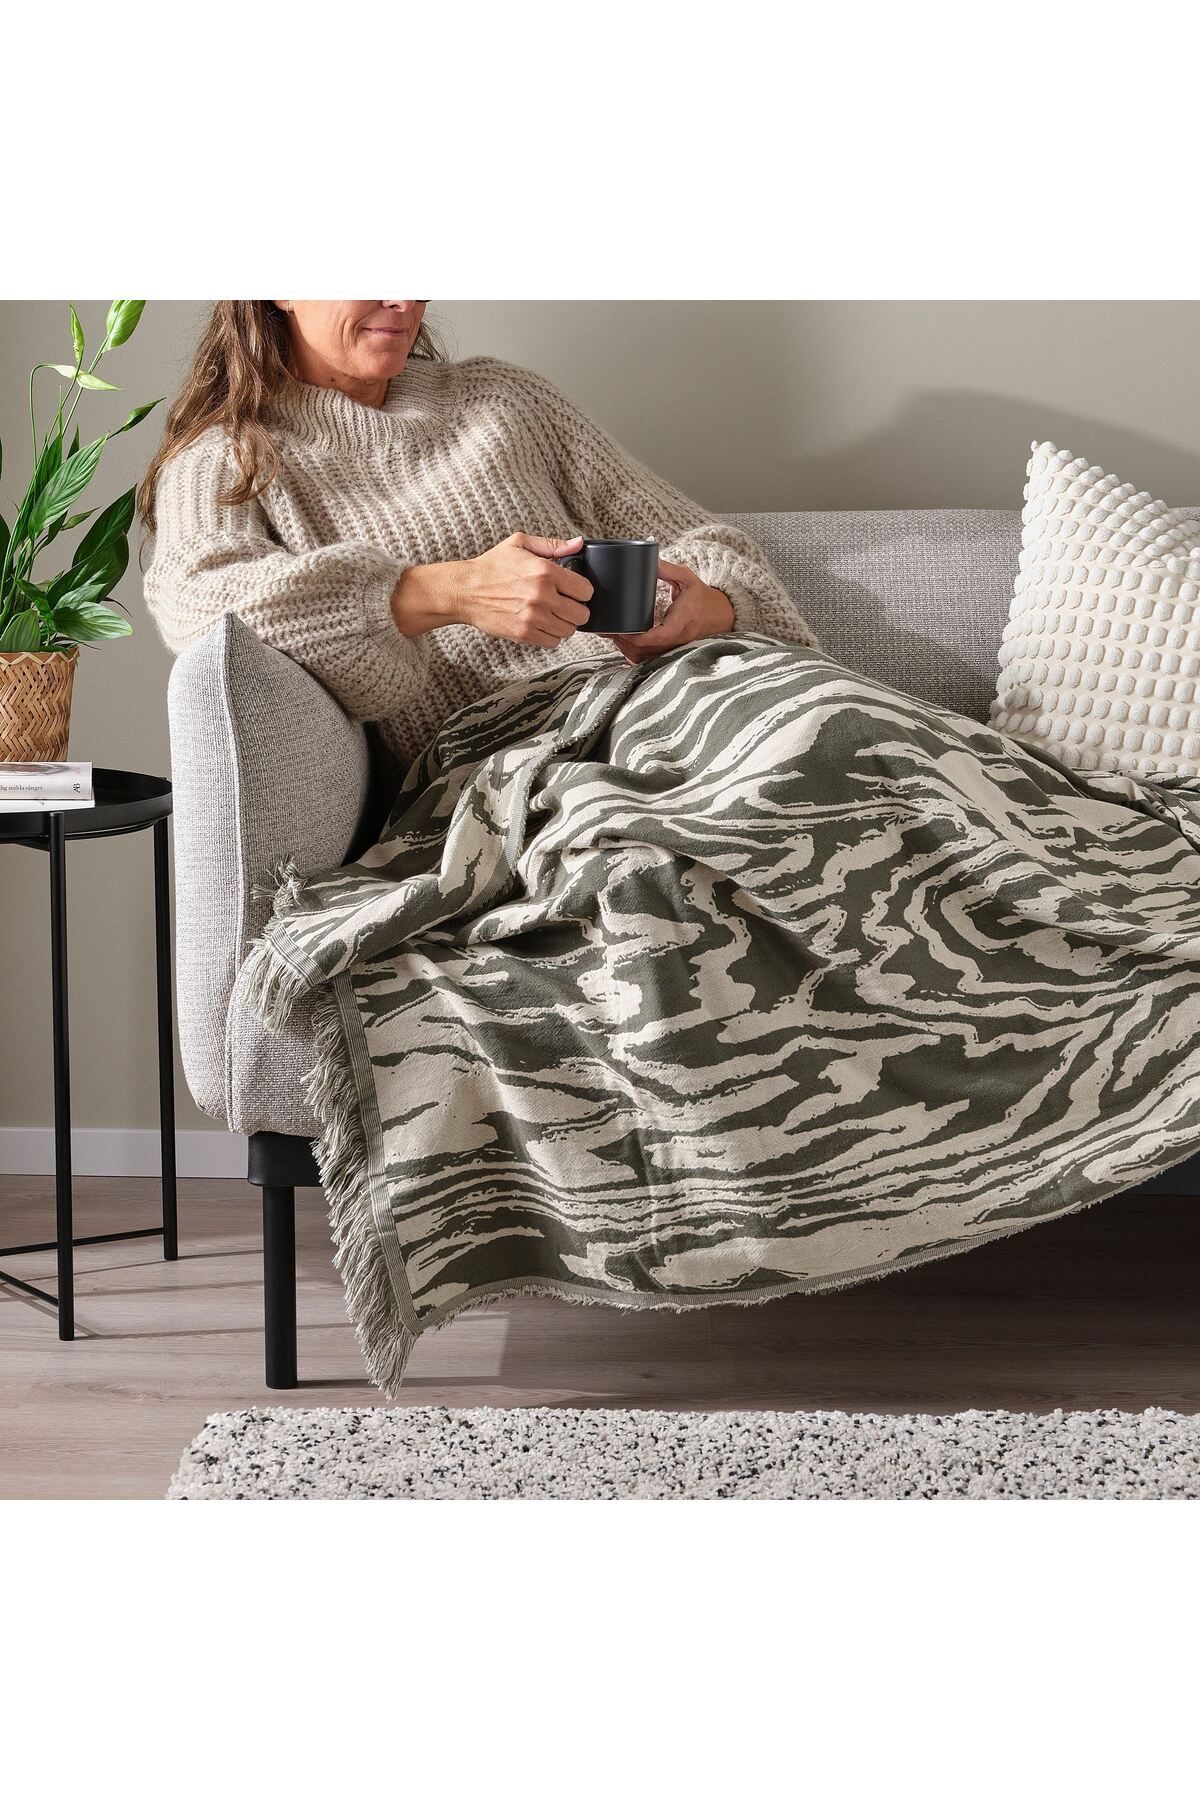 IKEA % pamuk örtü, battaniye, TV battaniyesi, 130x170 cm